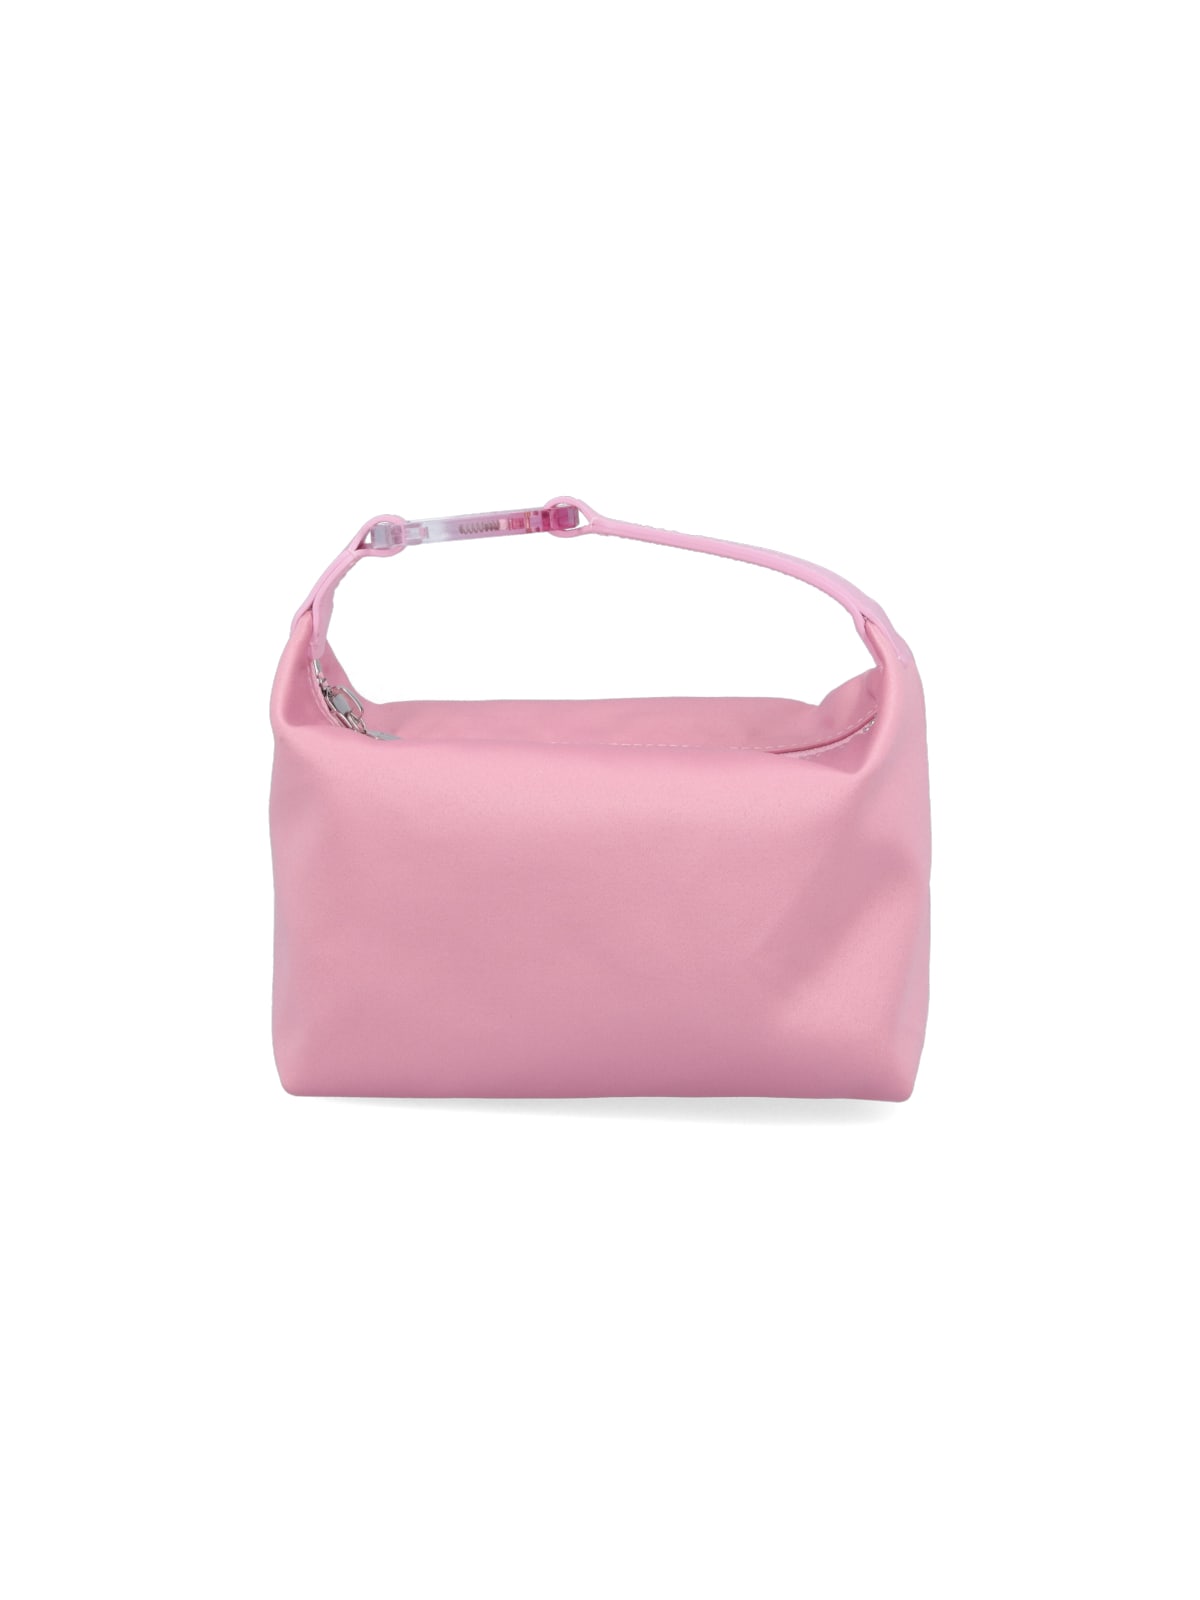 Eéra Nylon Moon Hand Bag In Pink